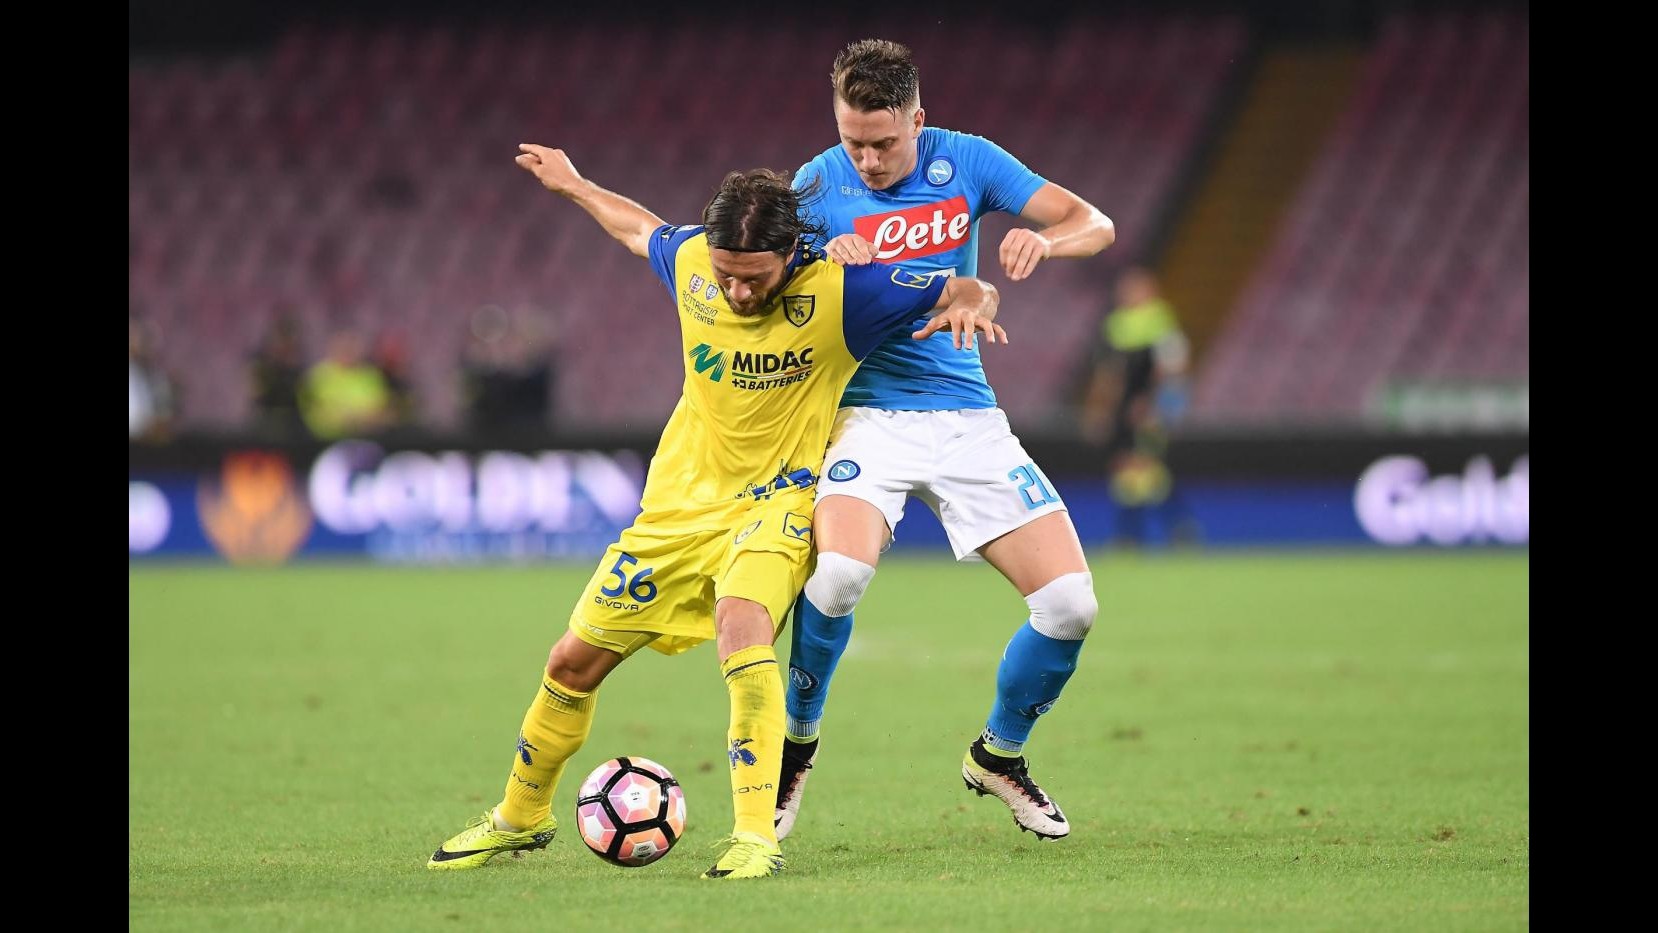 FOTO Napoli stende Chievo 2-0: a segno Gabbiadini e Hamsik